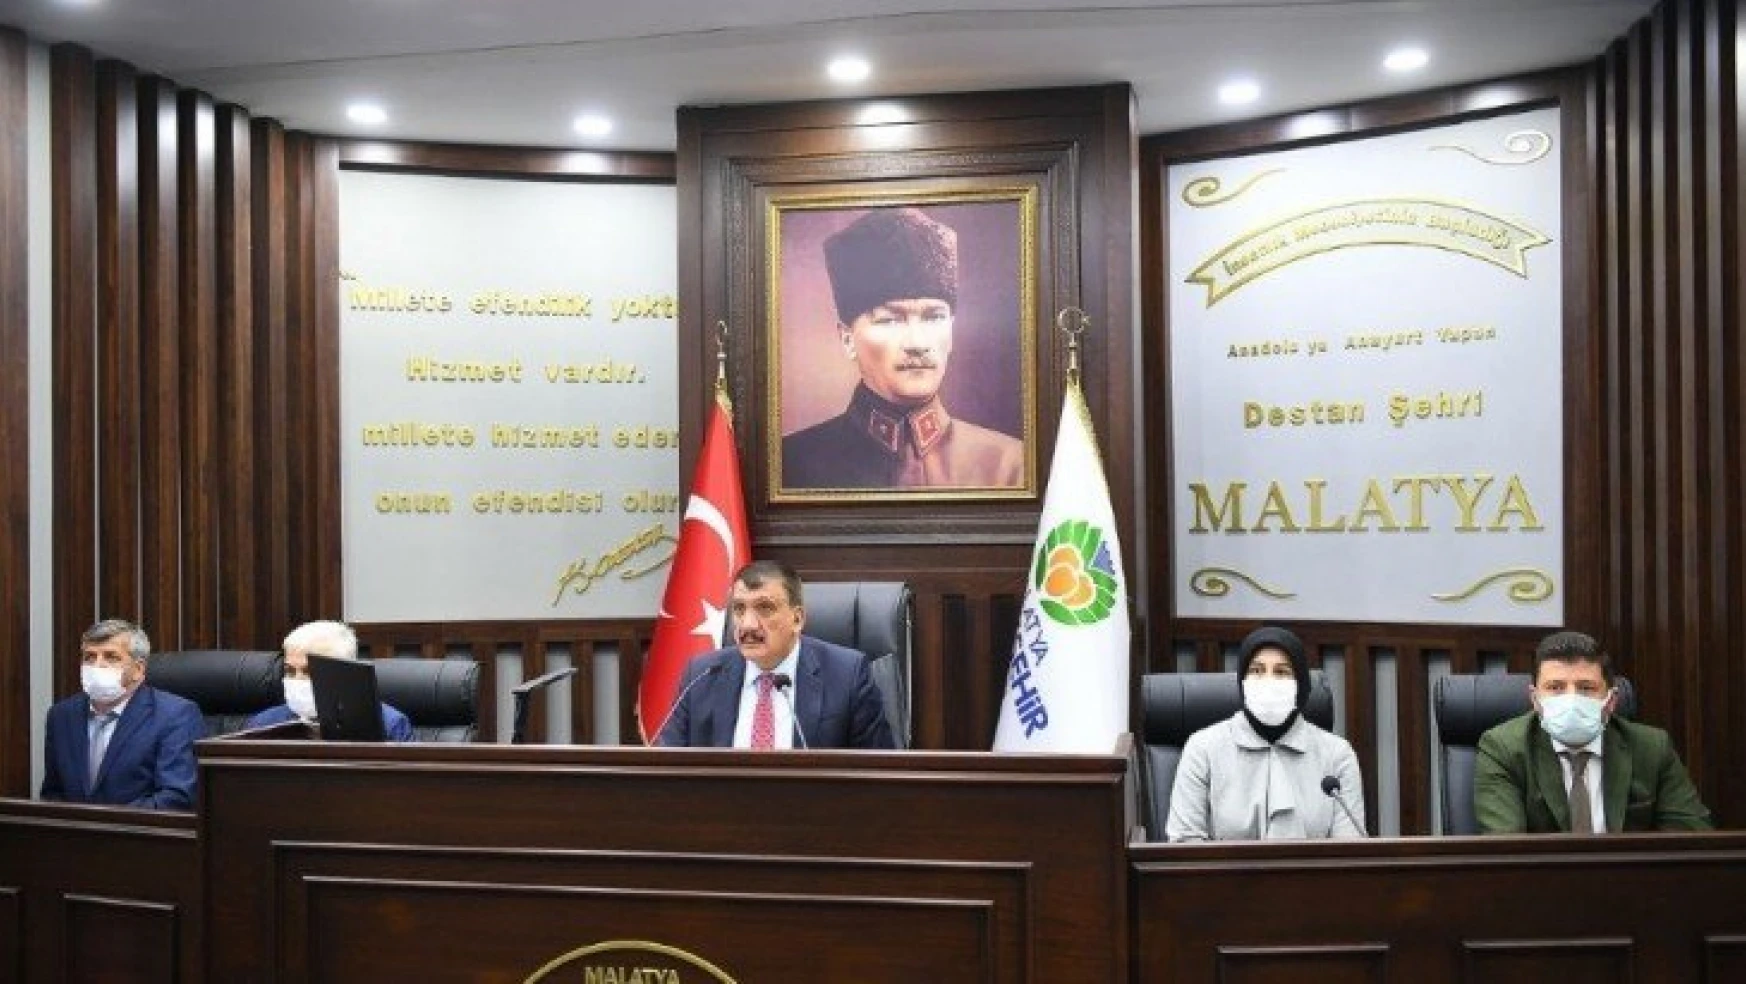 Malatya Büyükşehir Belediyesi kasım ayı meclis toplantıları sona erdi